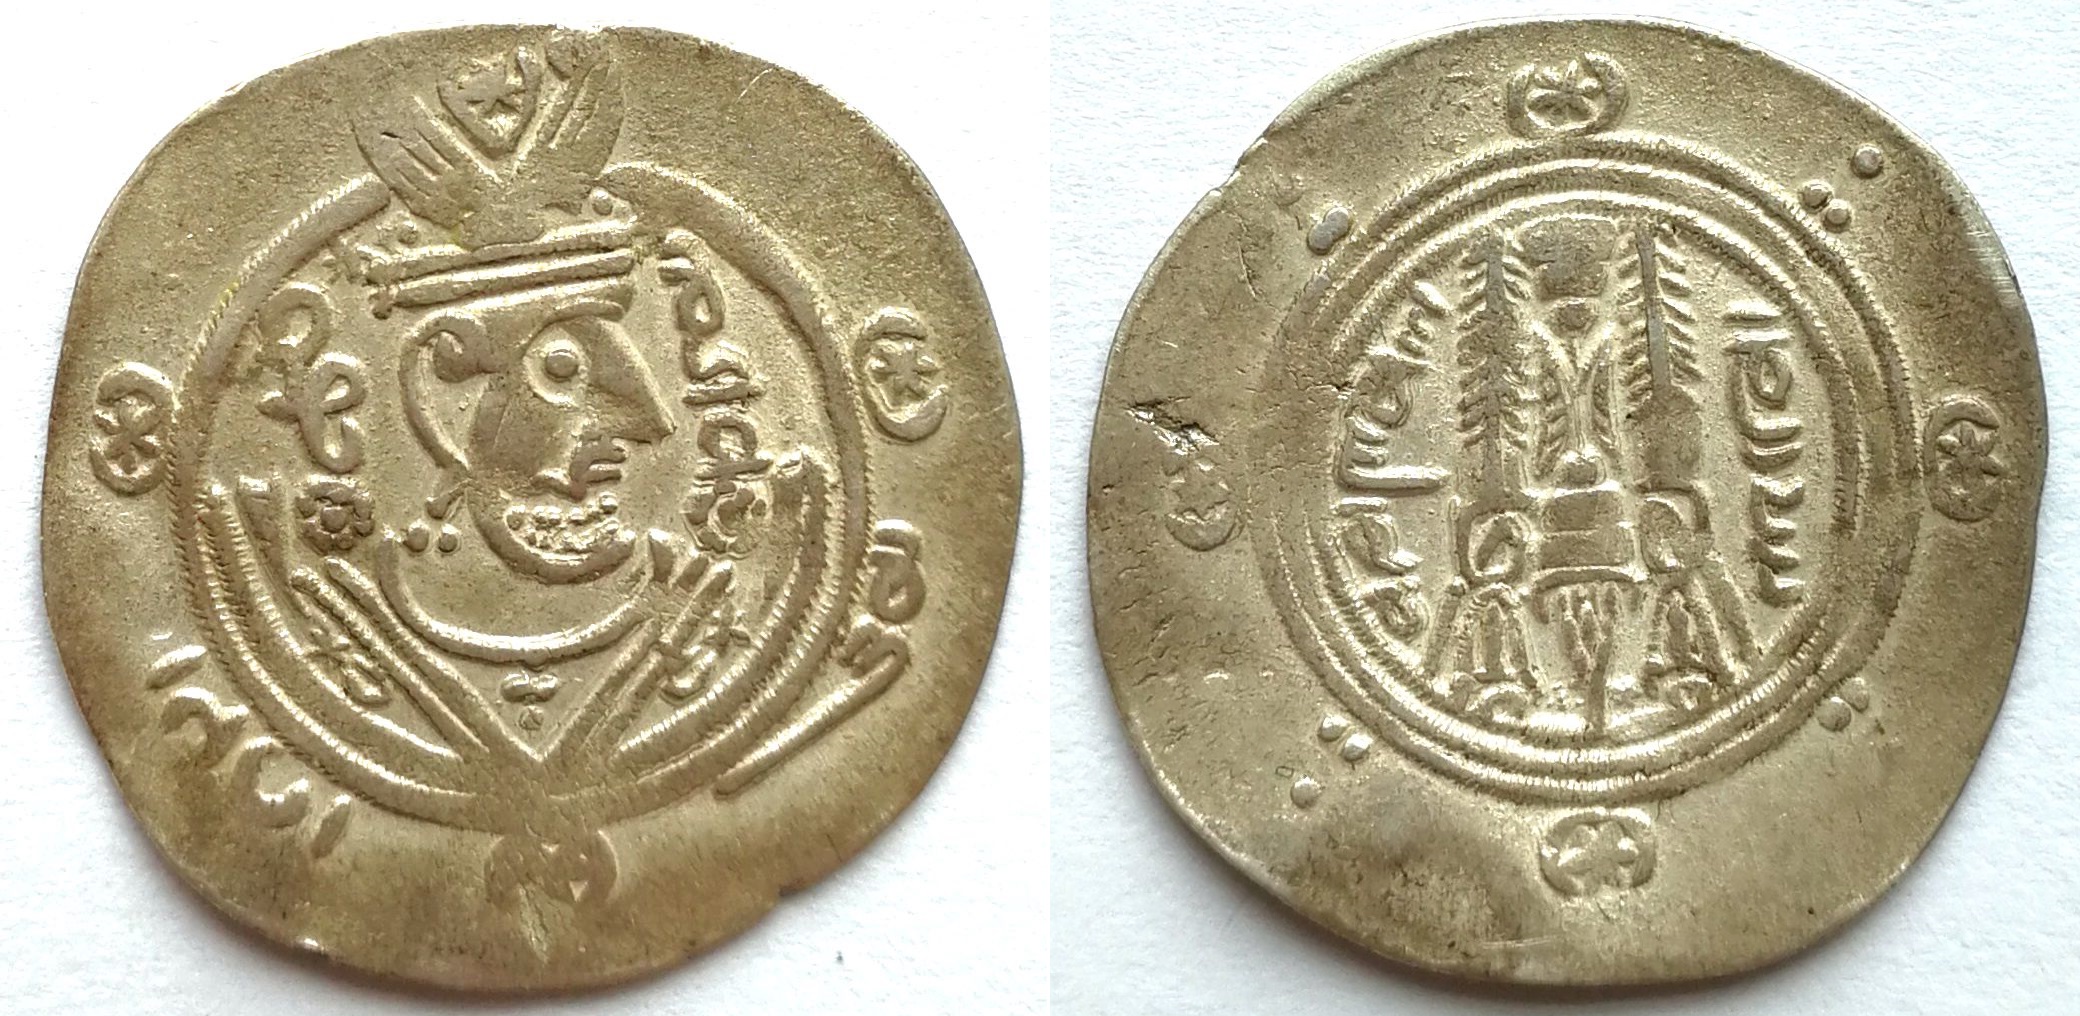 P4340, Persia Sassanid Empire Small Silver Coin 1.9 grams